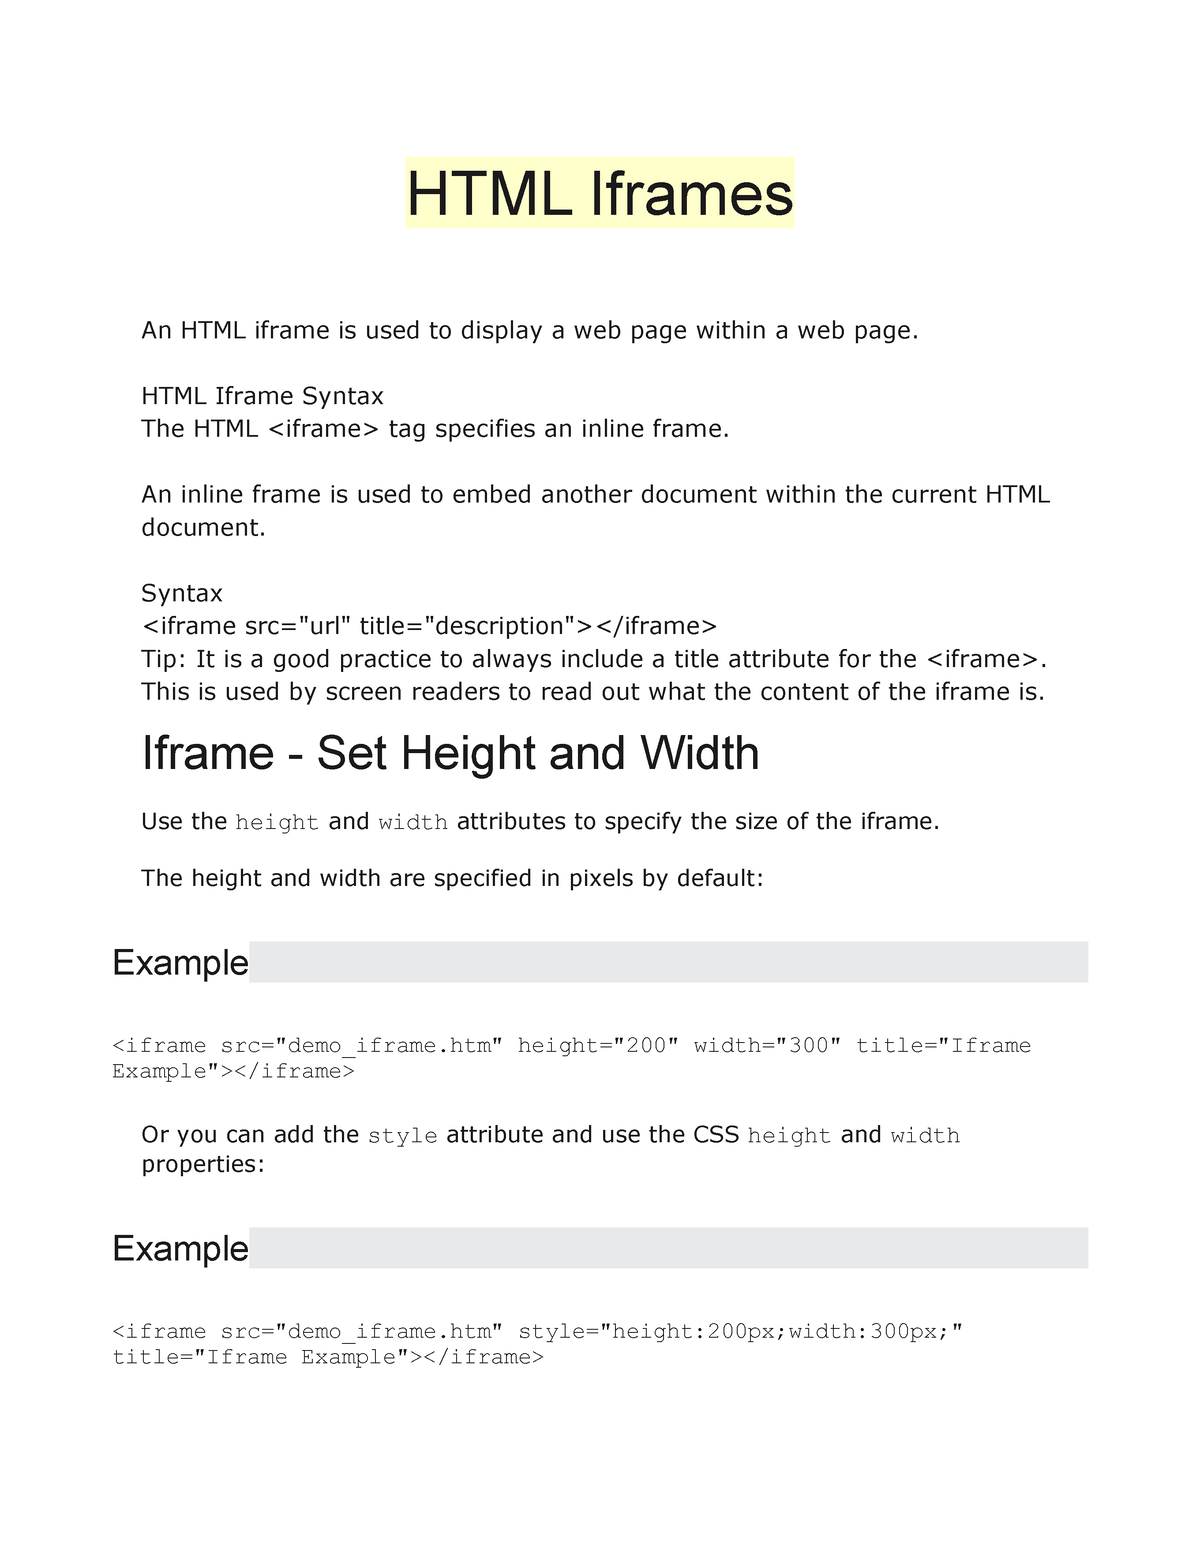 html iframe code not displaying